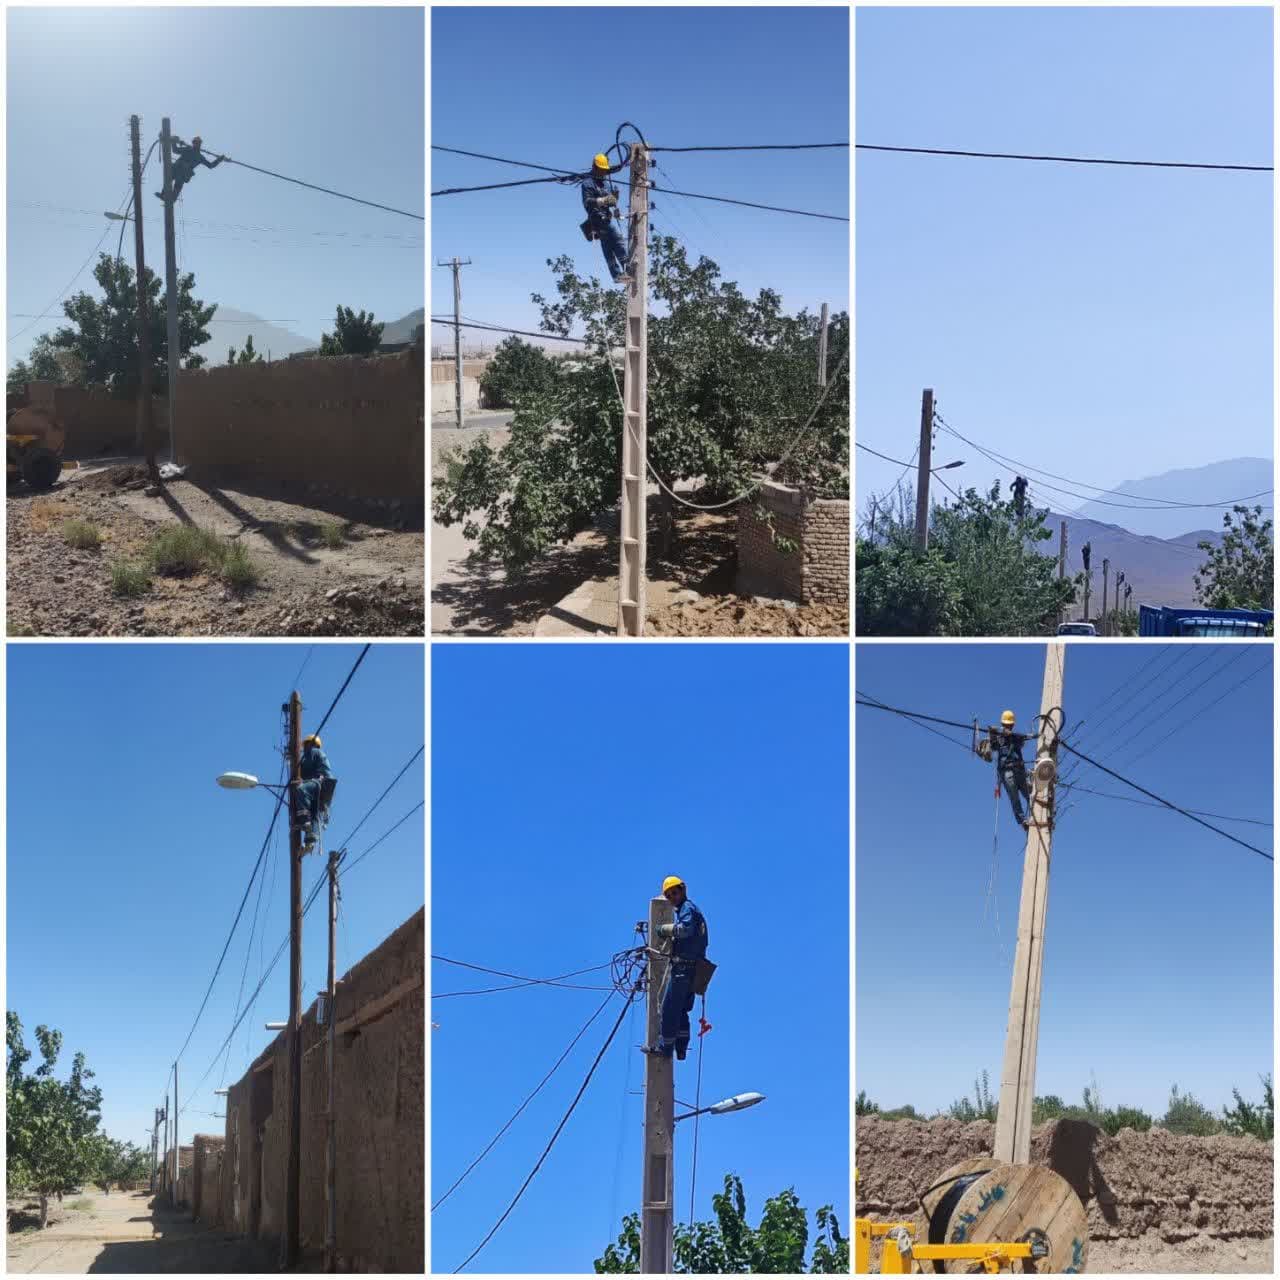 اتمام عملیات اصلاح و بهینه سازی شبکه فشارضعیف هوایی فاز اول در روستای محمد آباد میامی